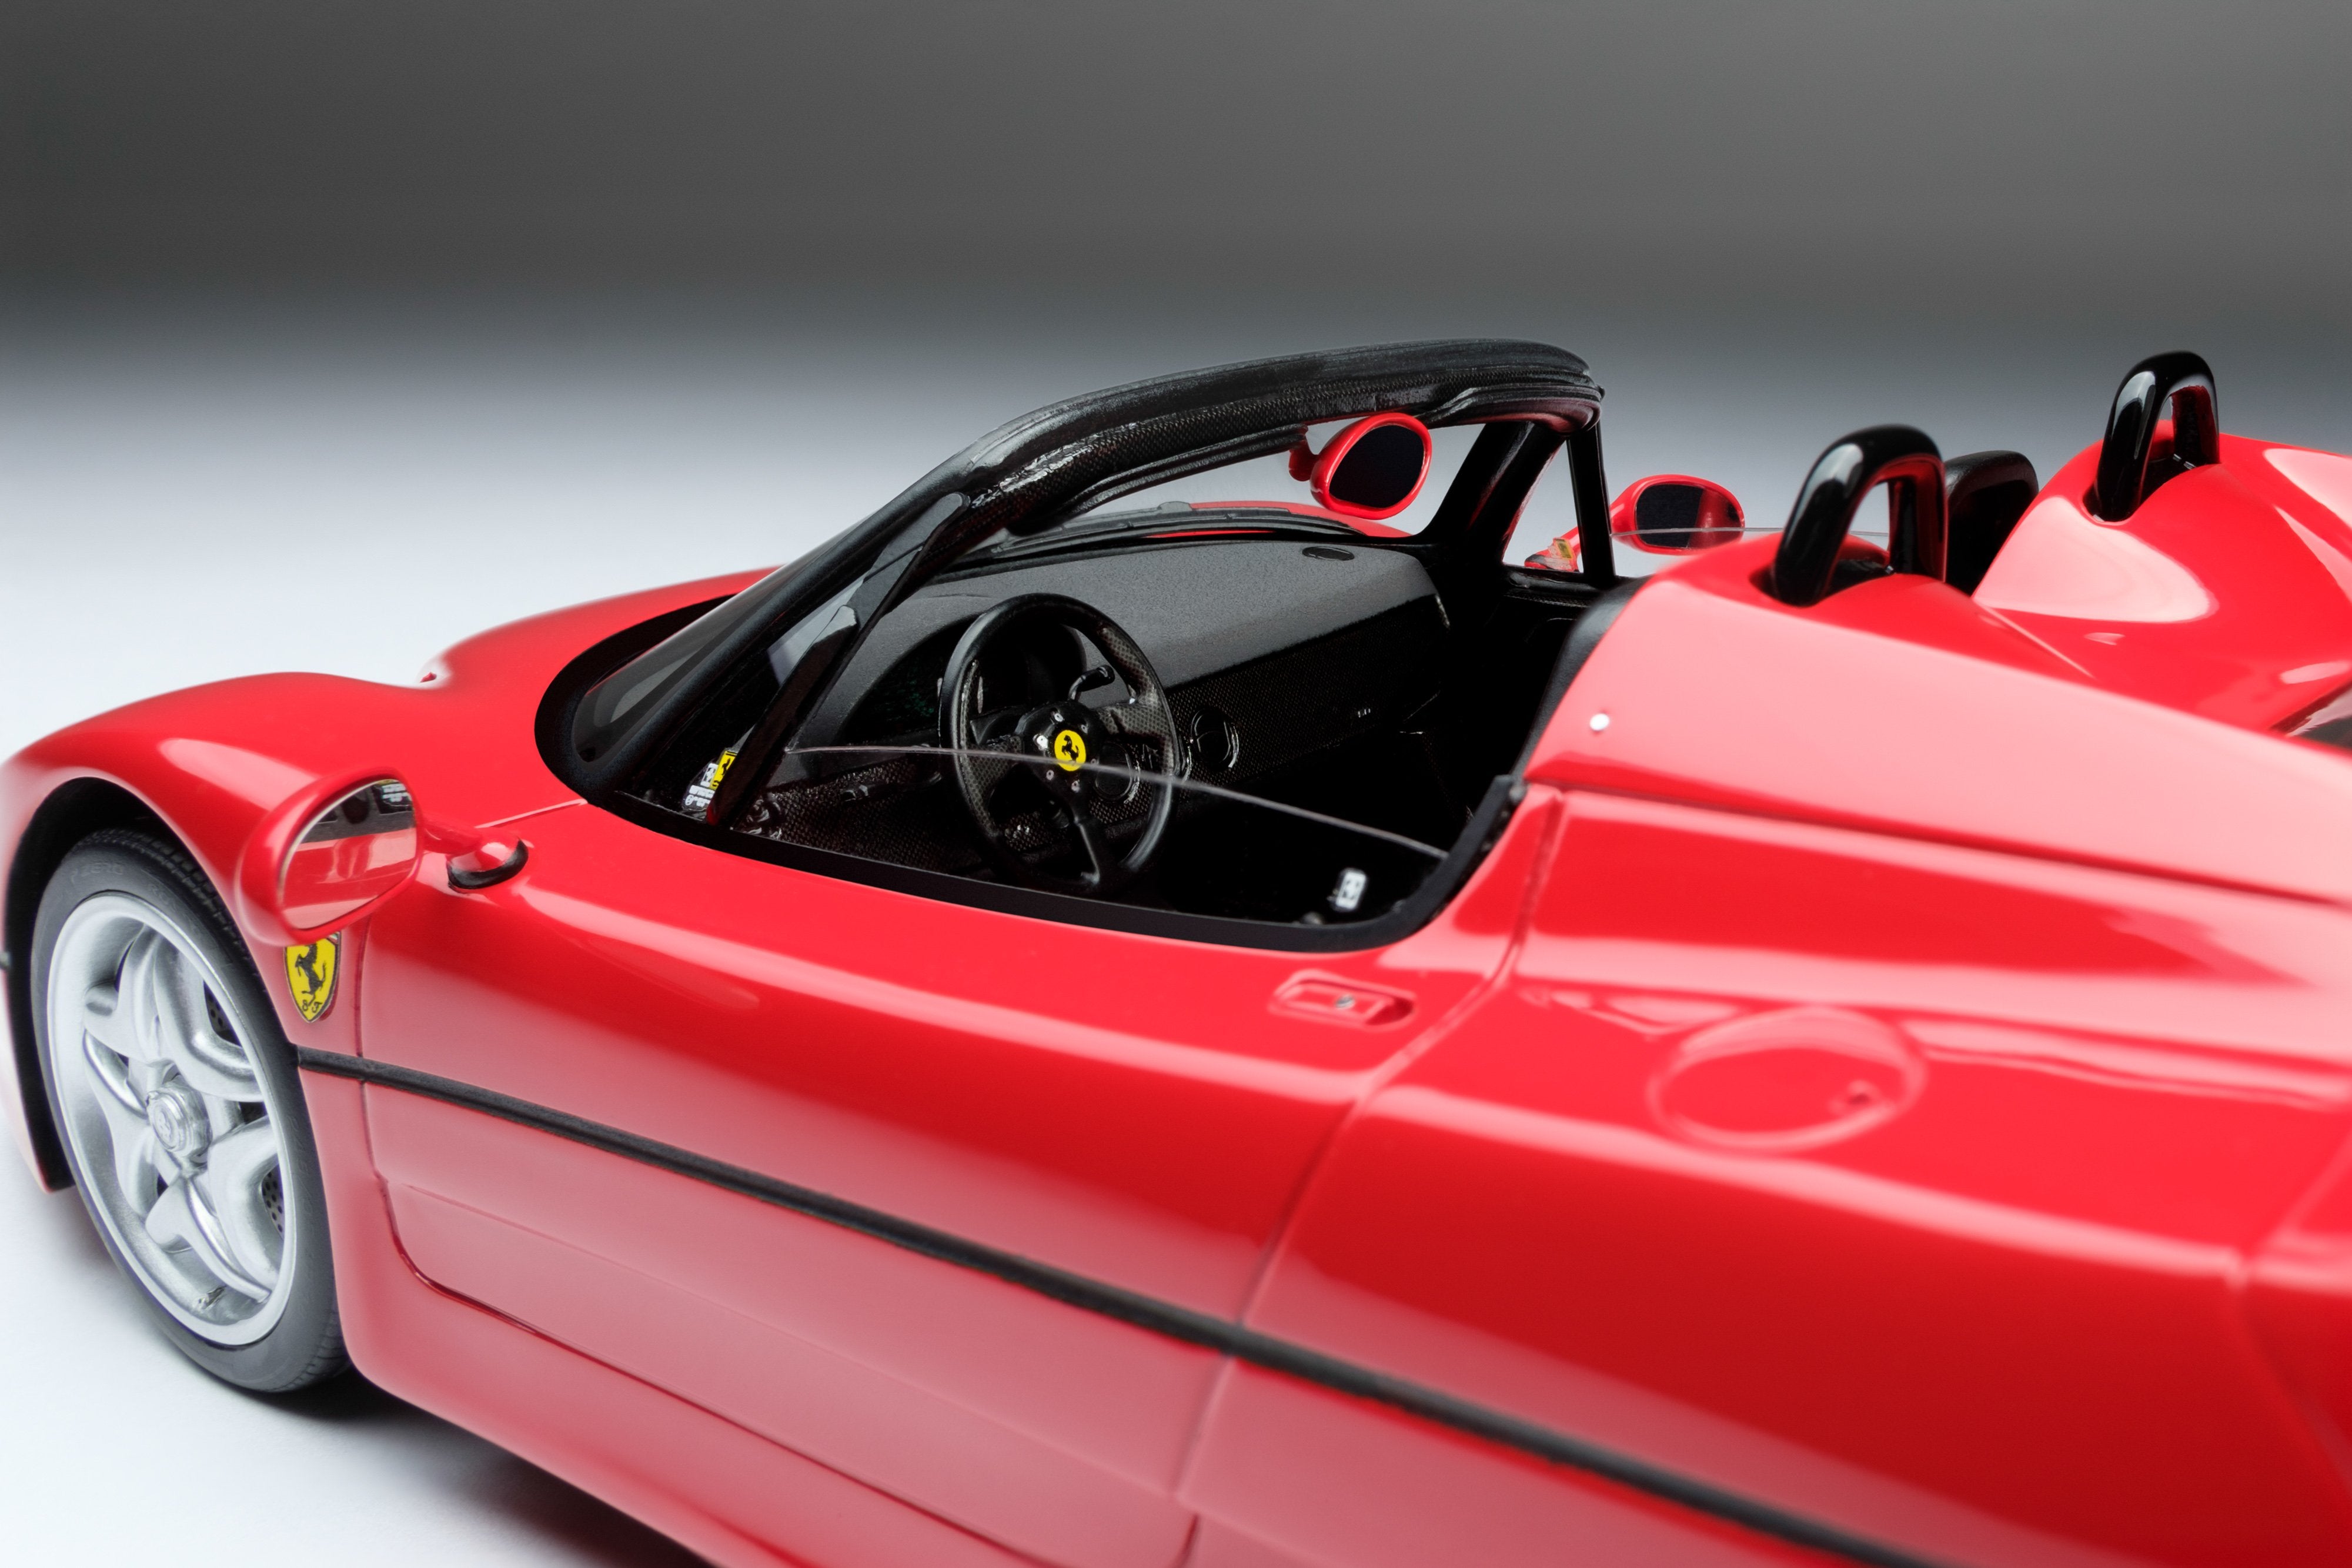 Ferrari F50 model in 1:18 scale